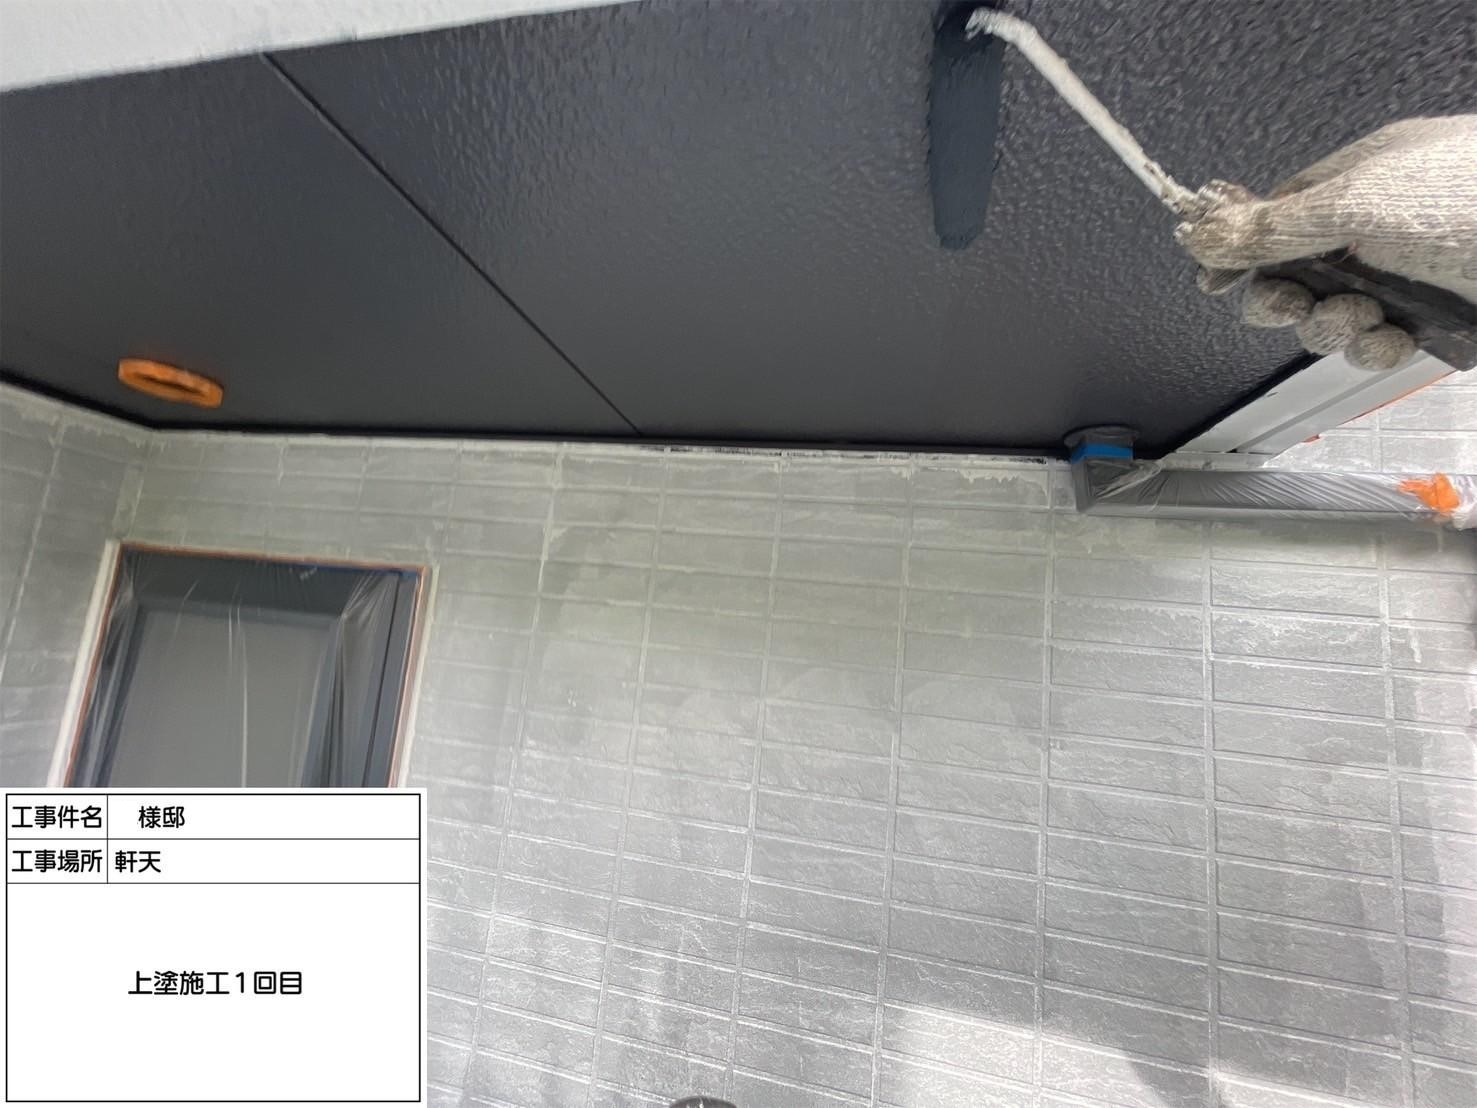 福岡県福岡市東区土井のH様邸でひび割れた外壁の補修やコケが繁殖している屋根の症状を改善し、さらに塗装にて耐久性と機能性の向上を行いました。ベランダ防水もひび割れを改善しウレタン防水を行いました。4/29完成です。【HPより】